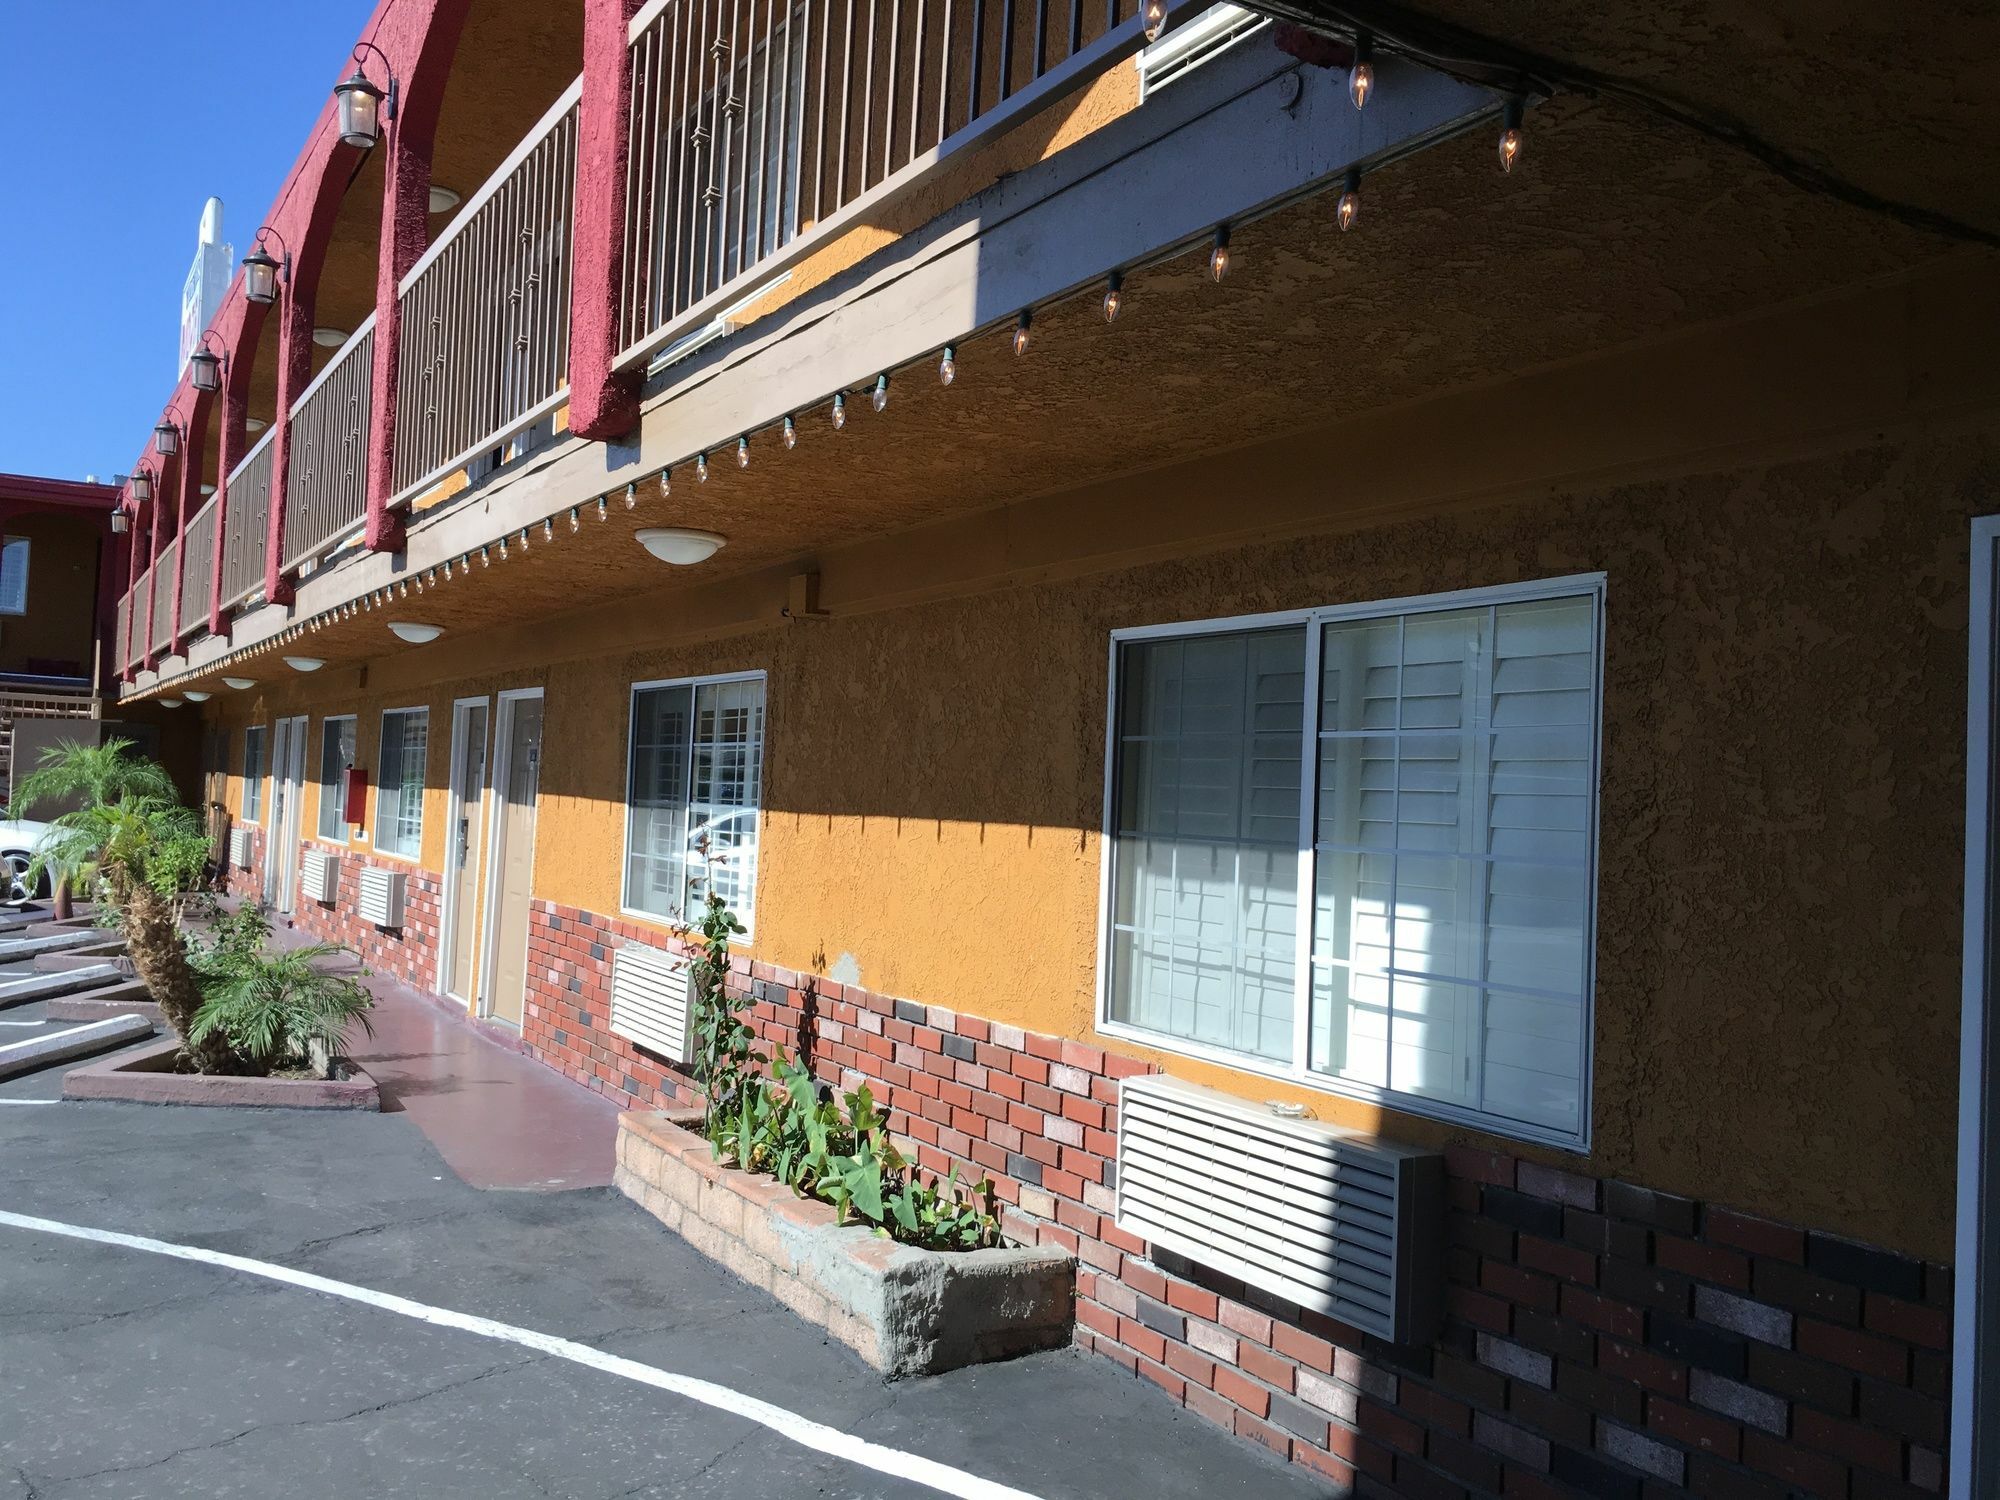 Hyde Park Motel Los Angeles Exterior foto